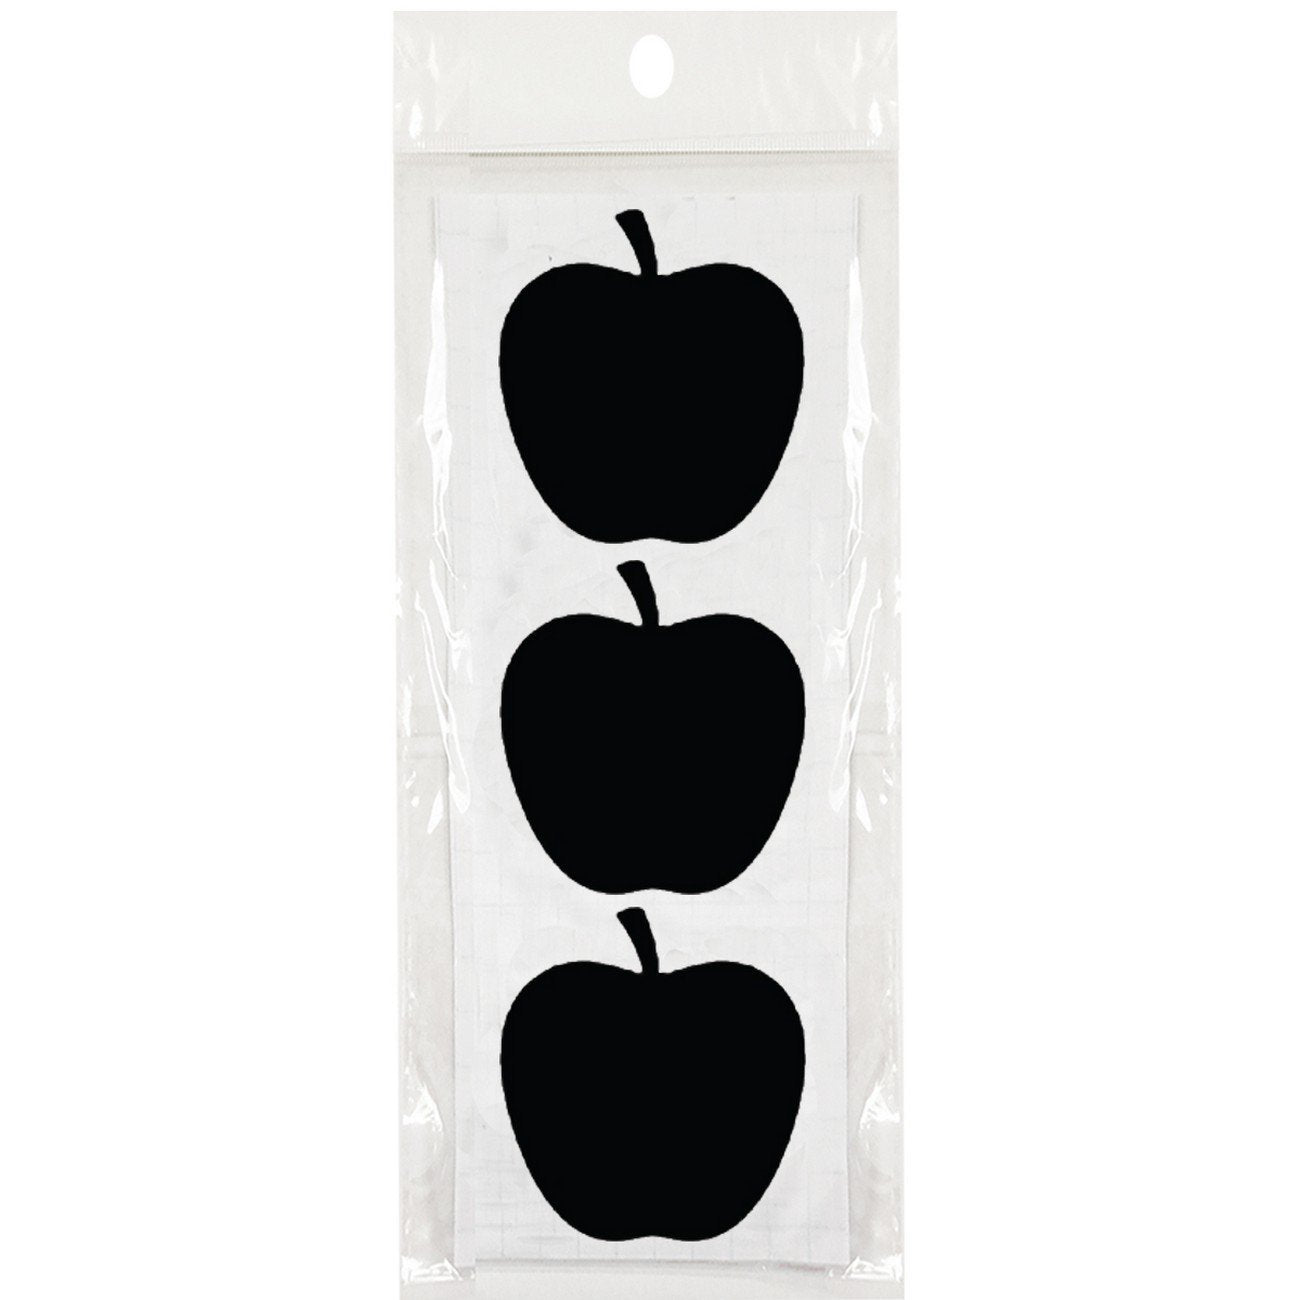 Wrapables Set of 30 Chalkboard Labels / Chalkboard Stickers  - 2.6" x 2.5" Apple